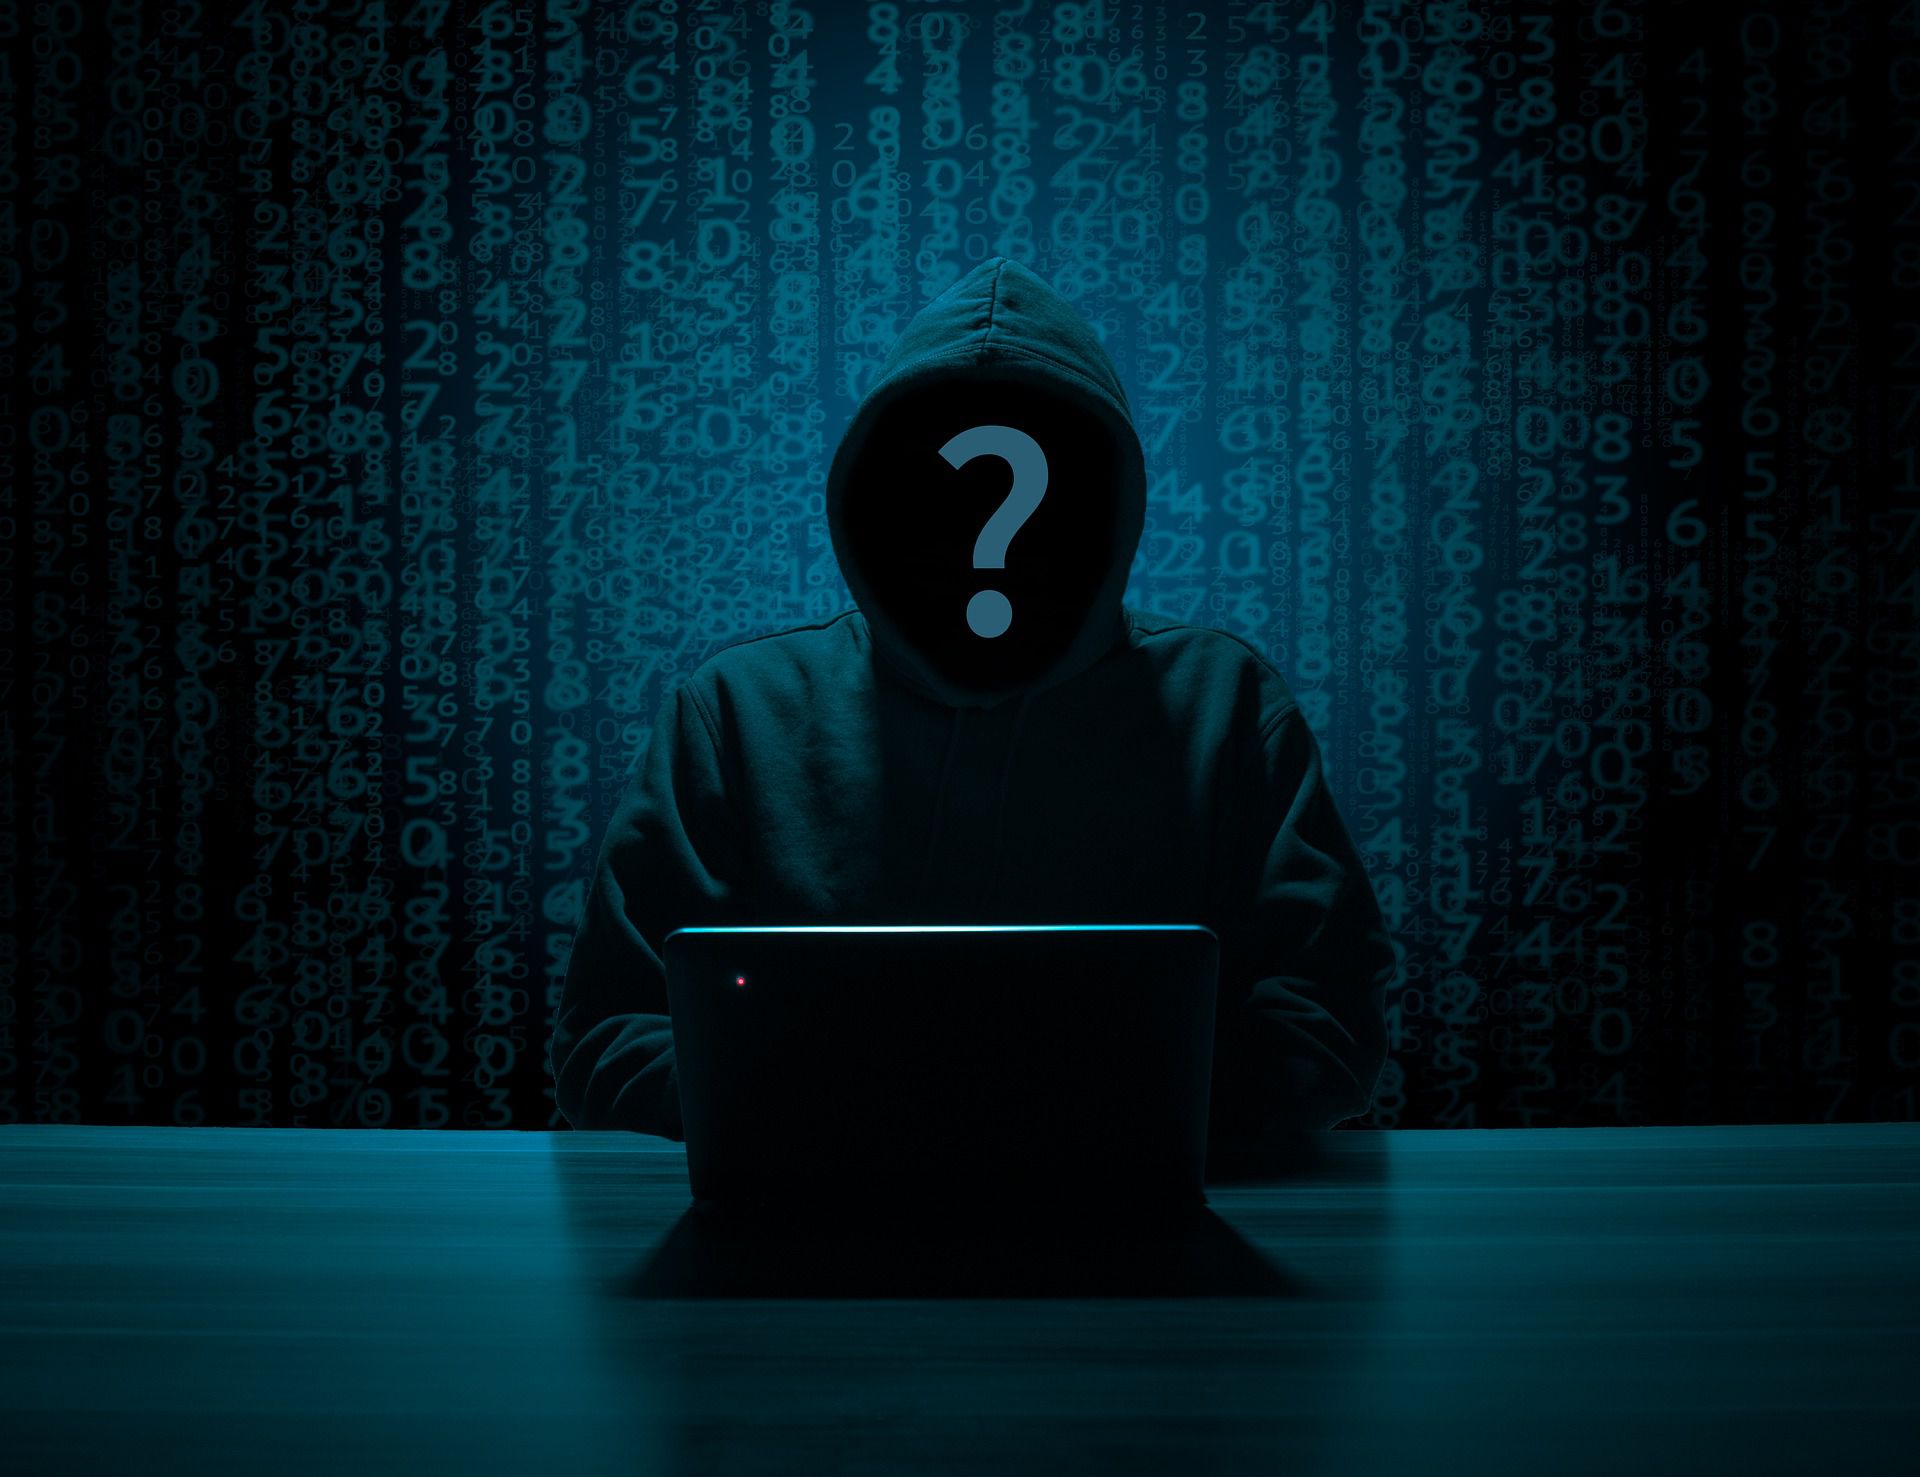 攻擊微軟、英偉達的駭客組織主謀被鎖定為16歲少年